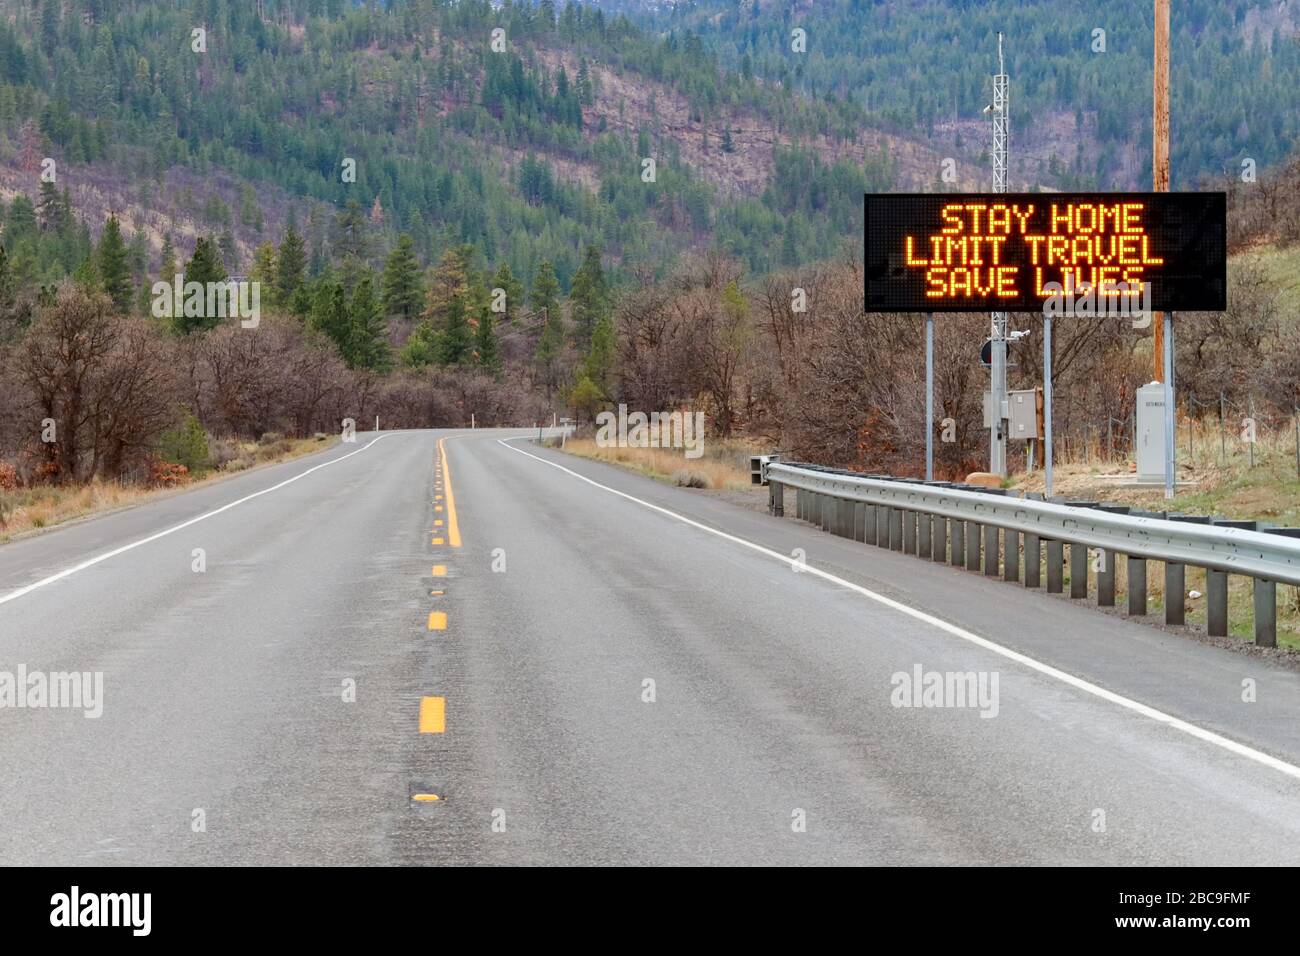 Toppenish, WA/USA - 28. März 2020: Elektronisches Schild entlang des U.S. Highway 97, das Menschen darüber informiert, zu Hause zu bleiben und Leben zu retten, indem das Risiko des Seins verringert wird Stockfoto